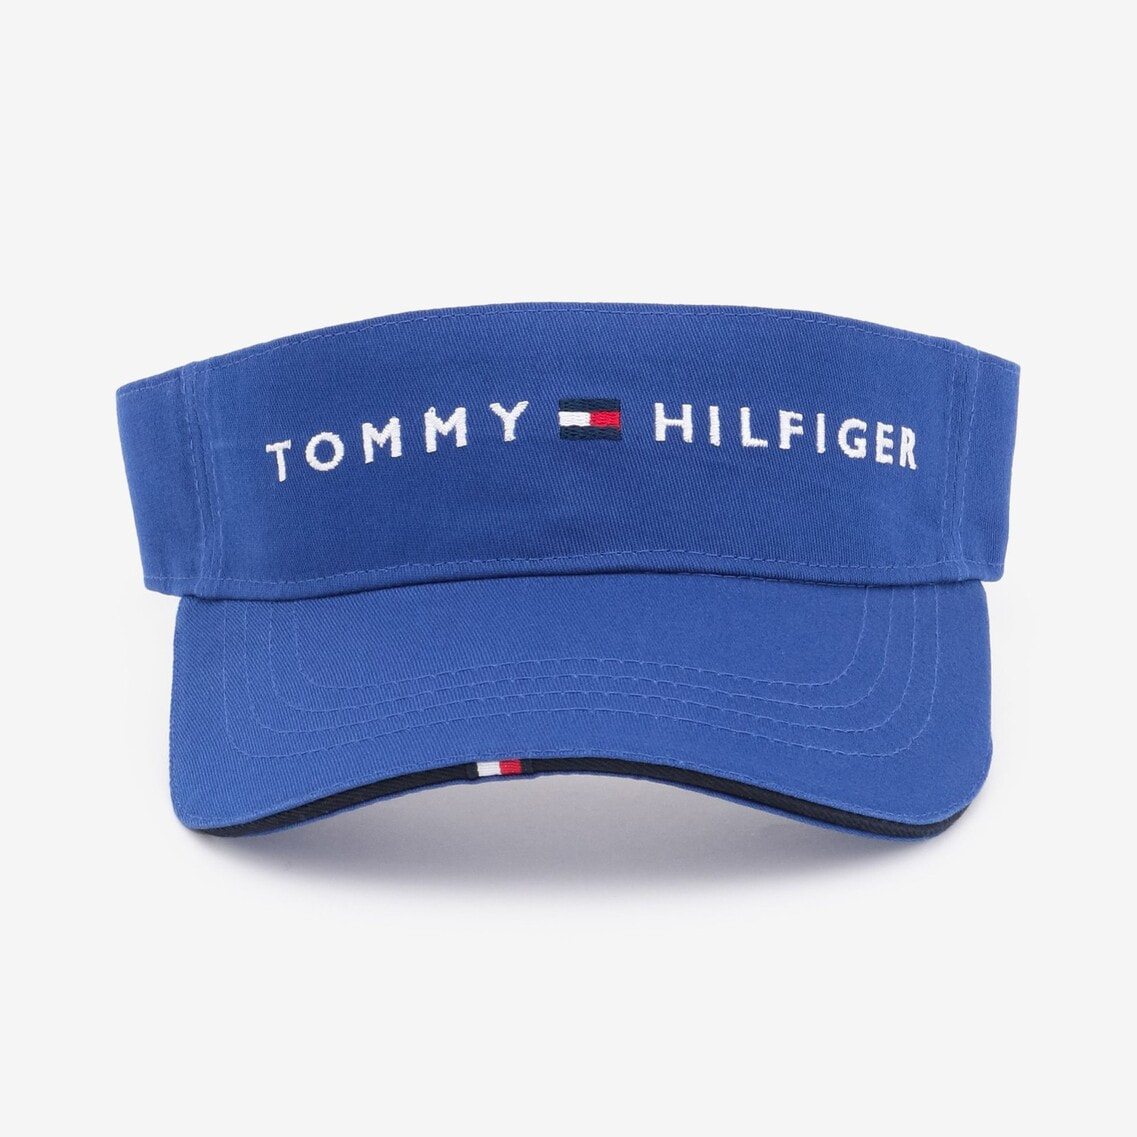 ロゴサンバイザー | TOMMY HILFIGER | Tommy Hilfiger - トミー ヒルフィガー 公式オンラインストア